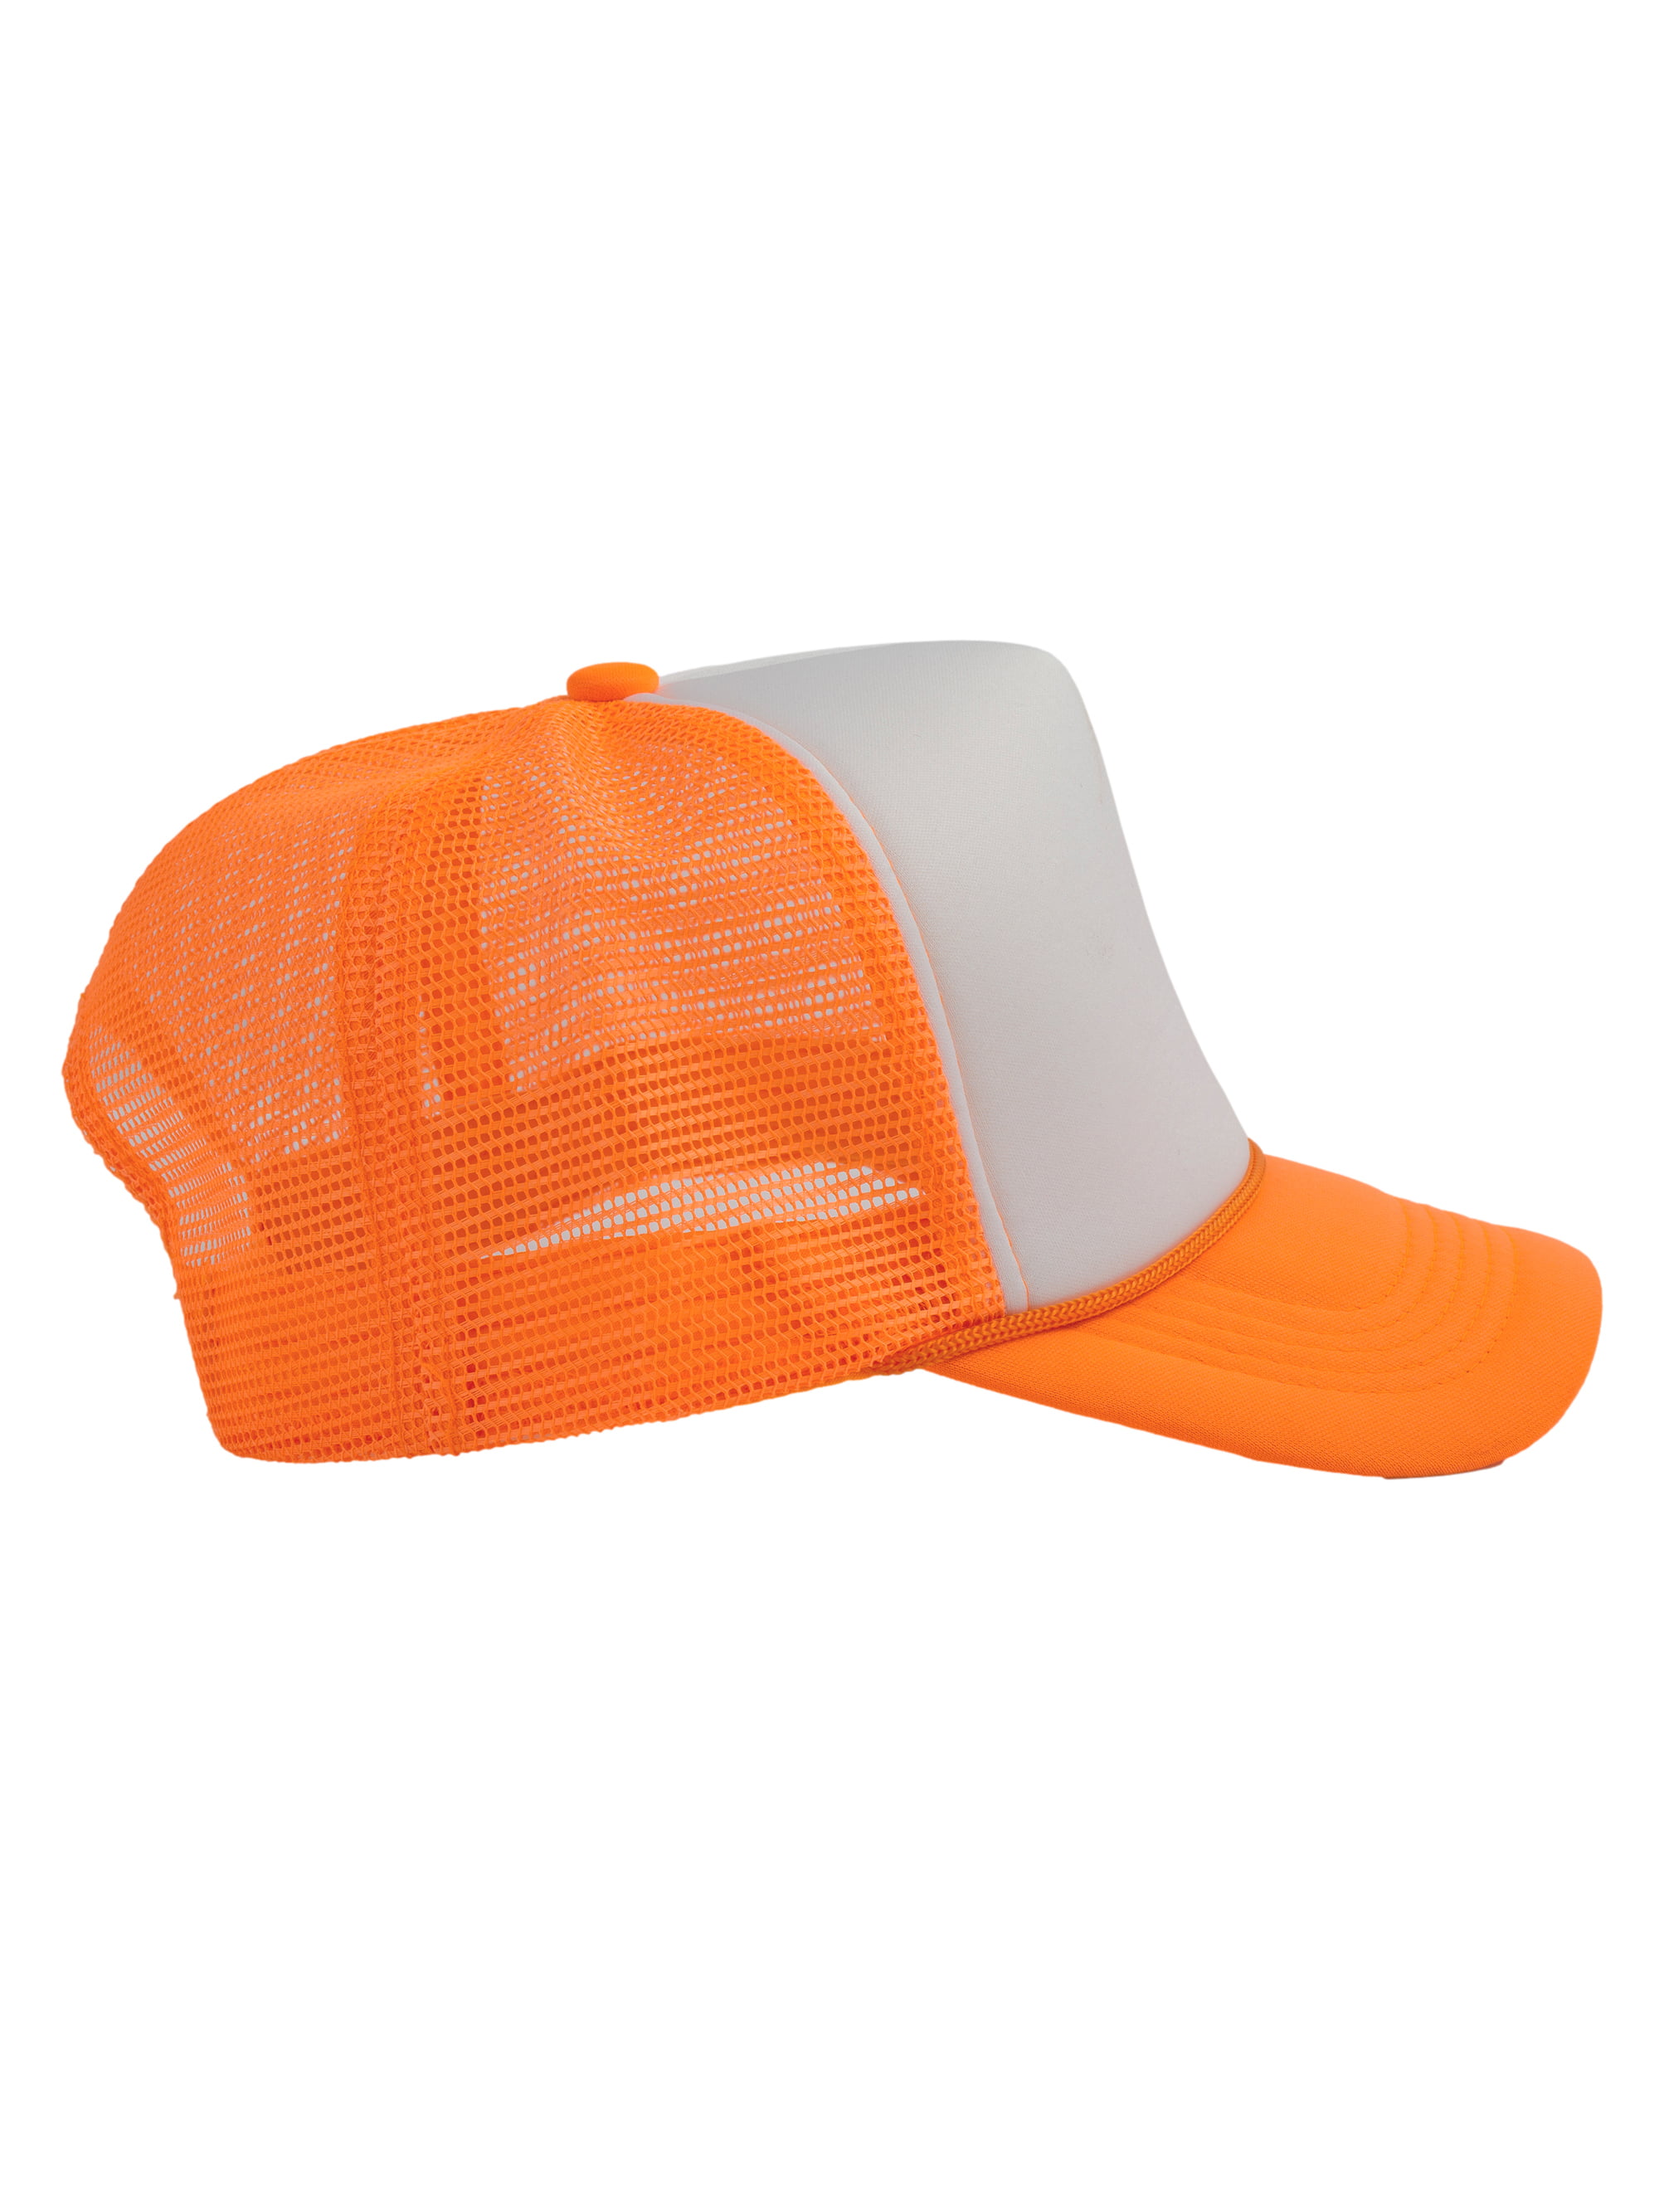 Top Headwear Hats Mens White/Neon Trucker - Foam Mesh Hat Snapback Trucker Orange Blank